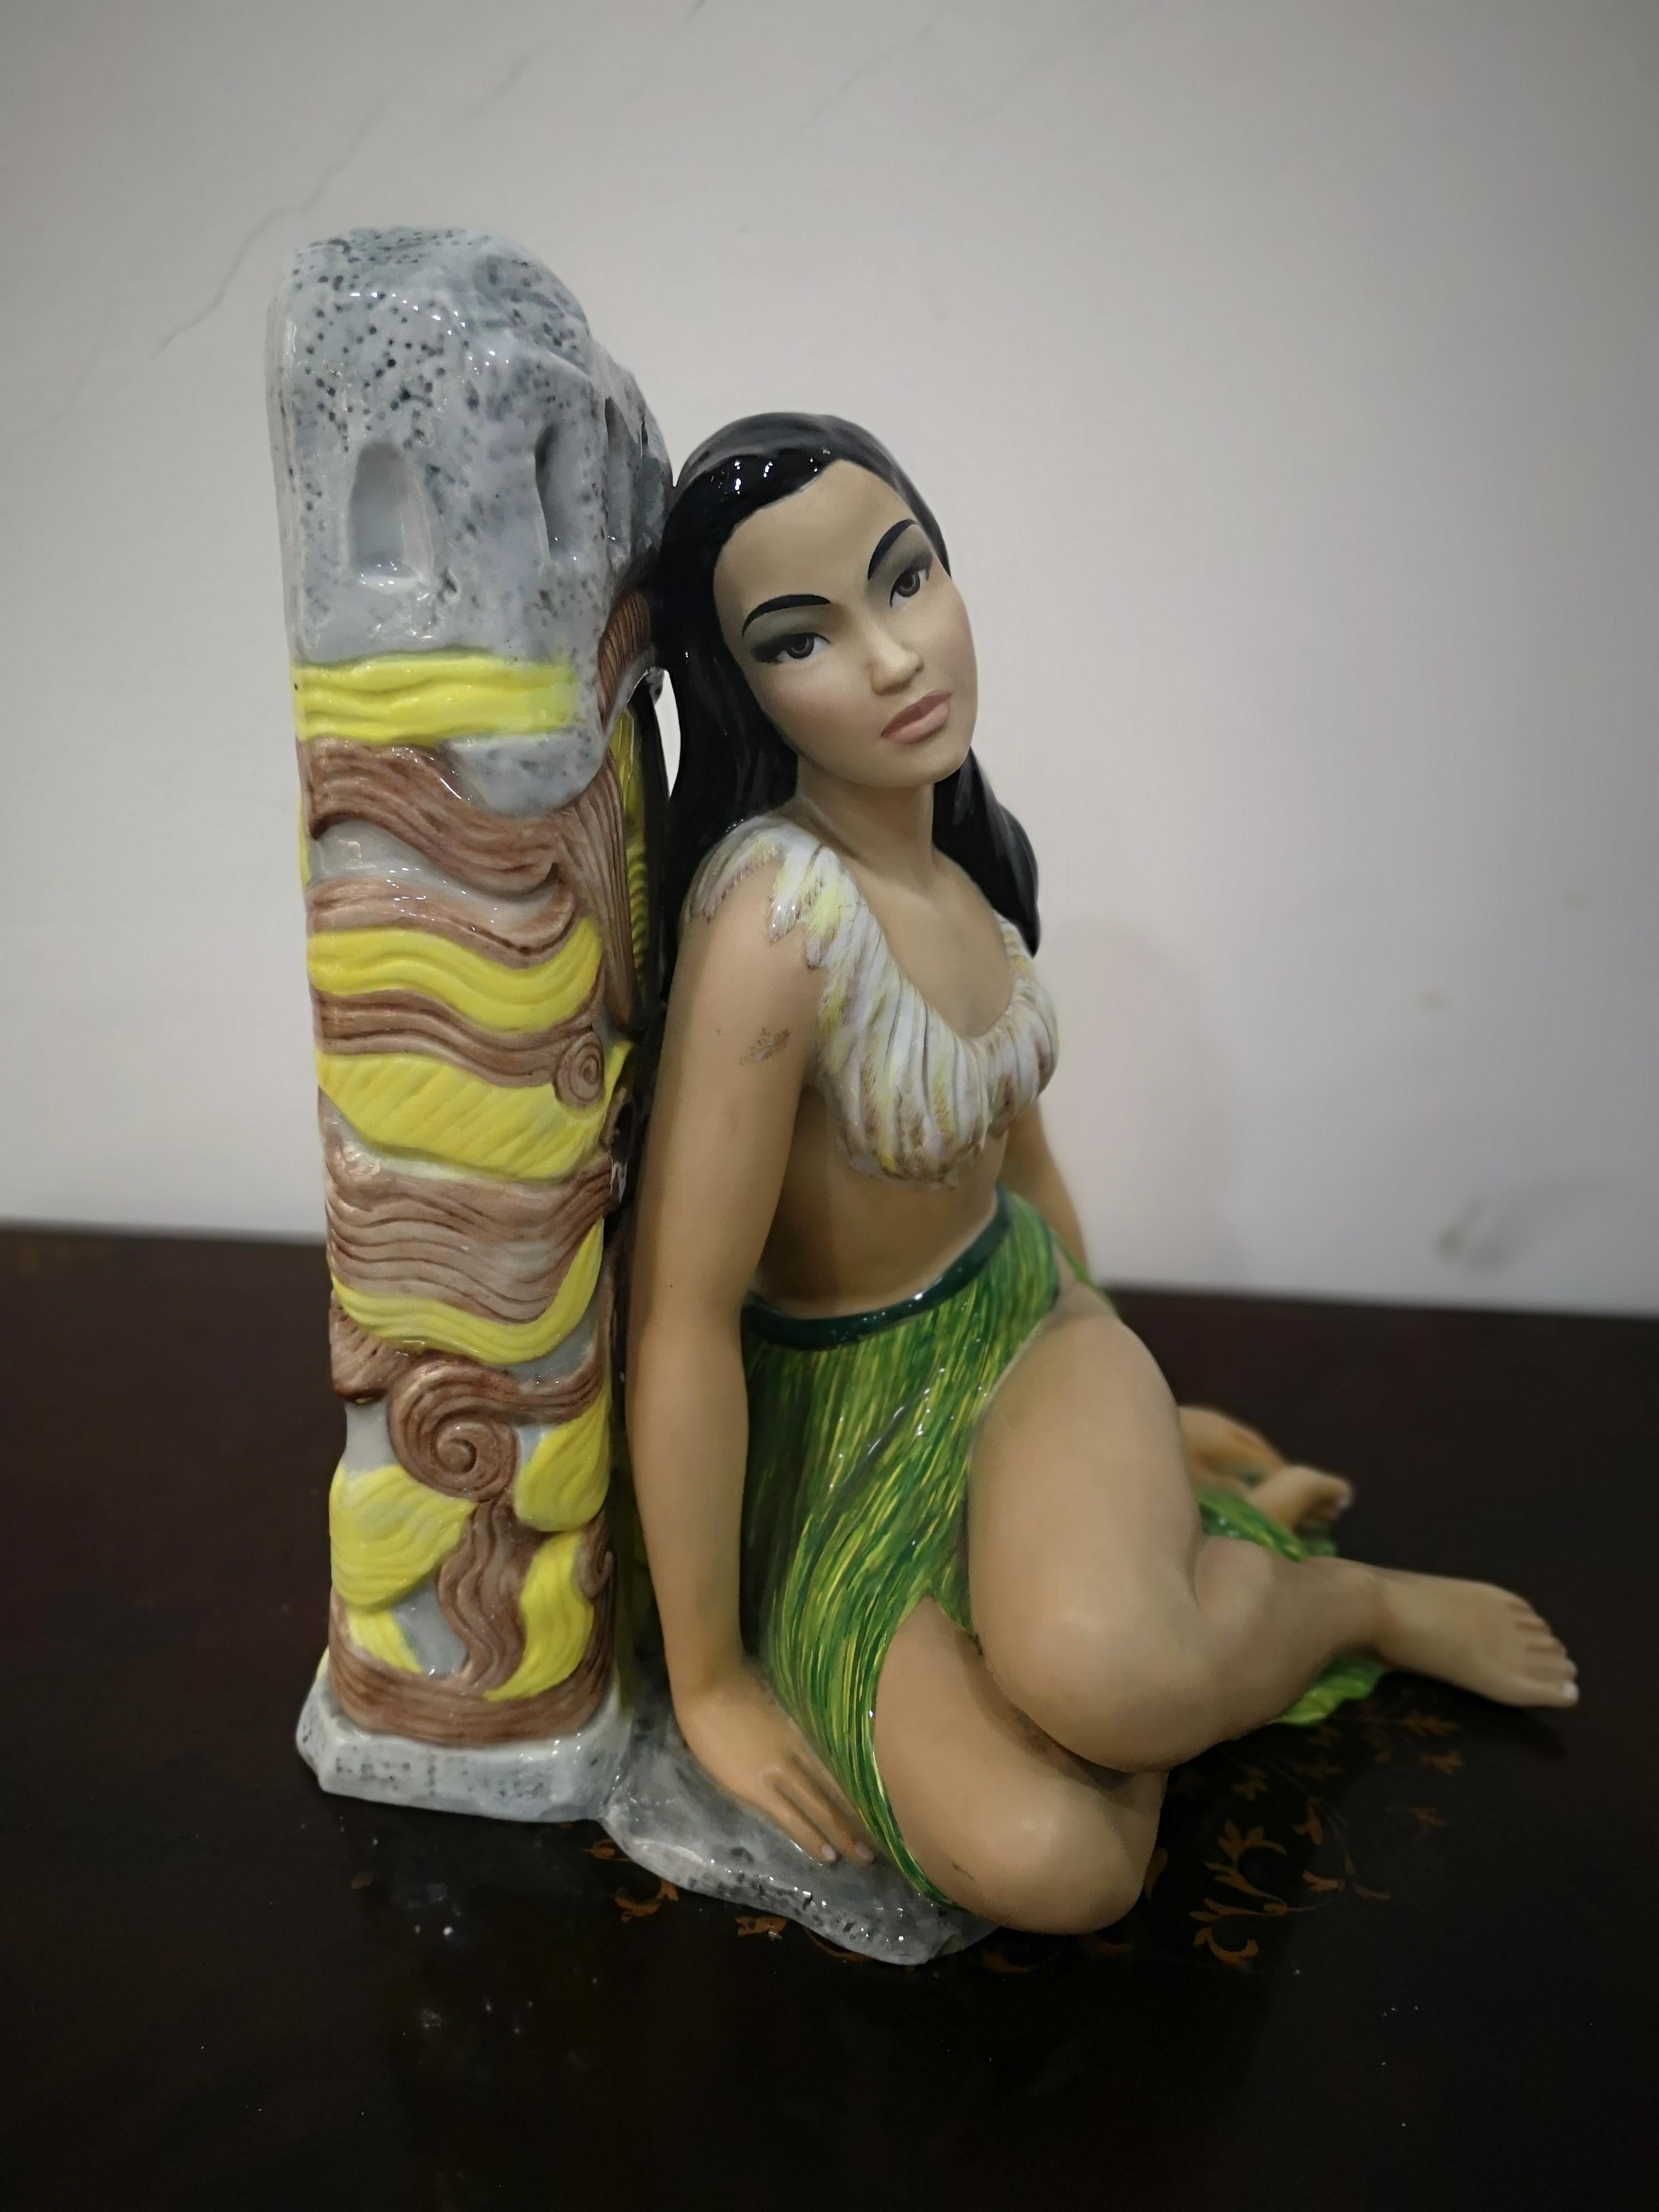 Bellissima ceramica dipinta a mano che raffigura una ragazza  Hawaiana
Manifattura firmata Ronzan anni 50 in ottime condizioni
come raffigurato nelle foto che evidenziano la manifattura di grande qualità
nel viso e nella figura in